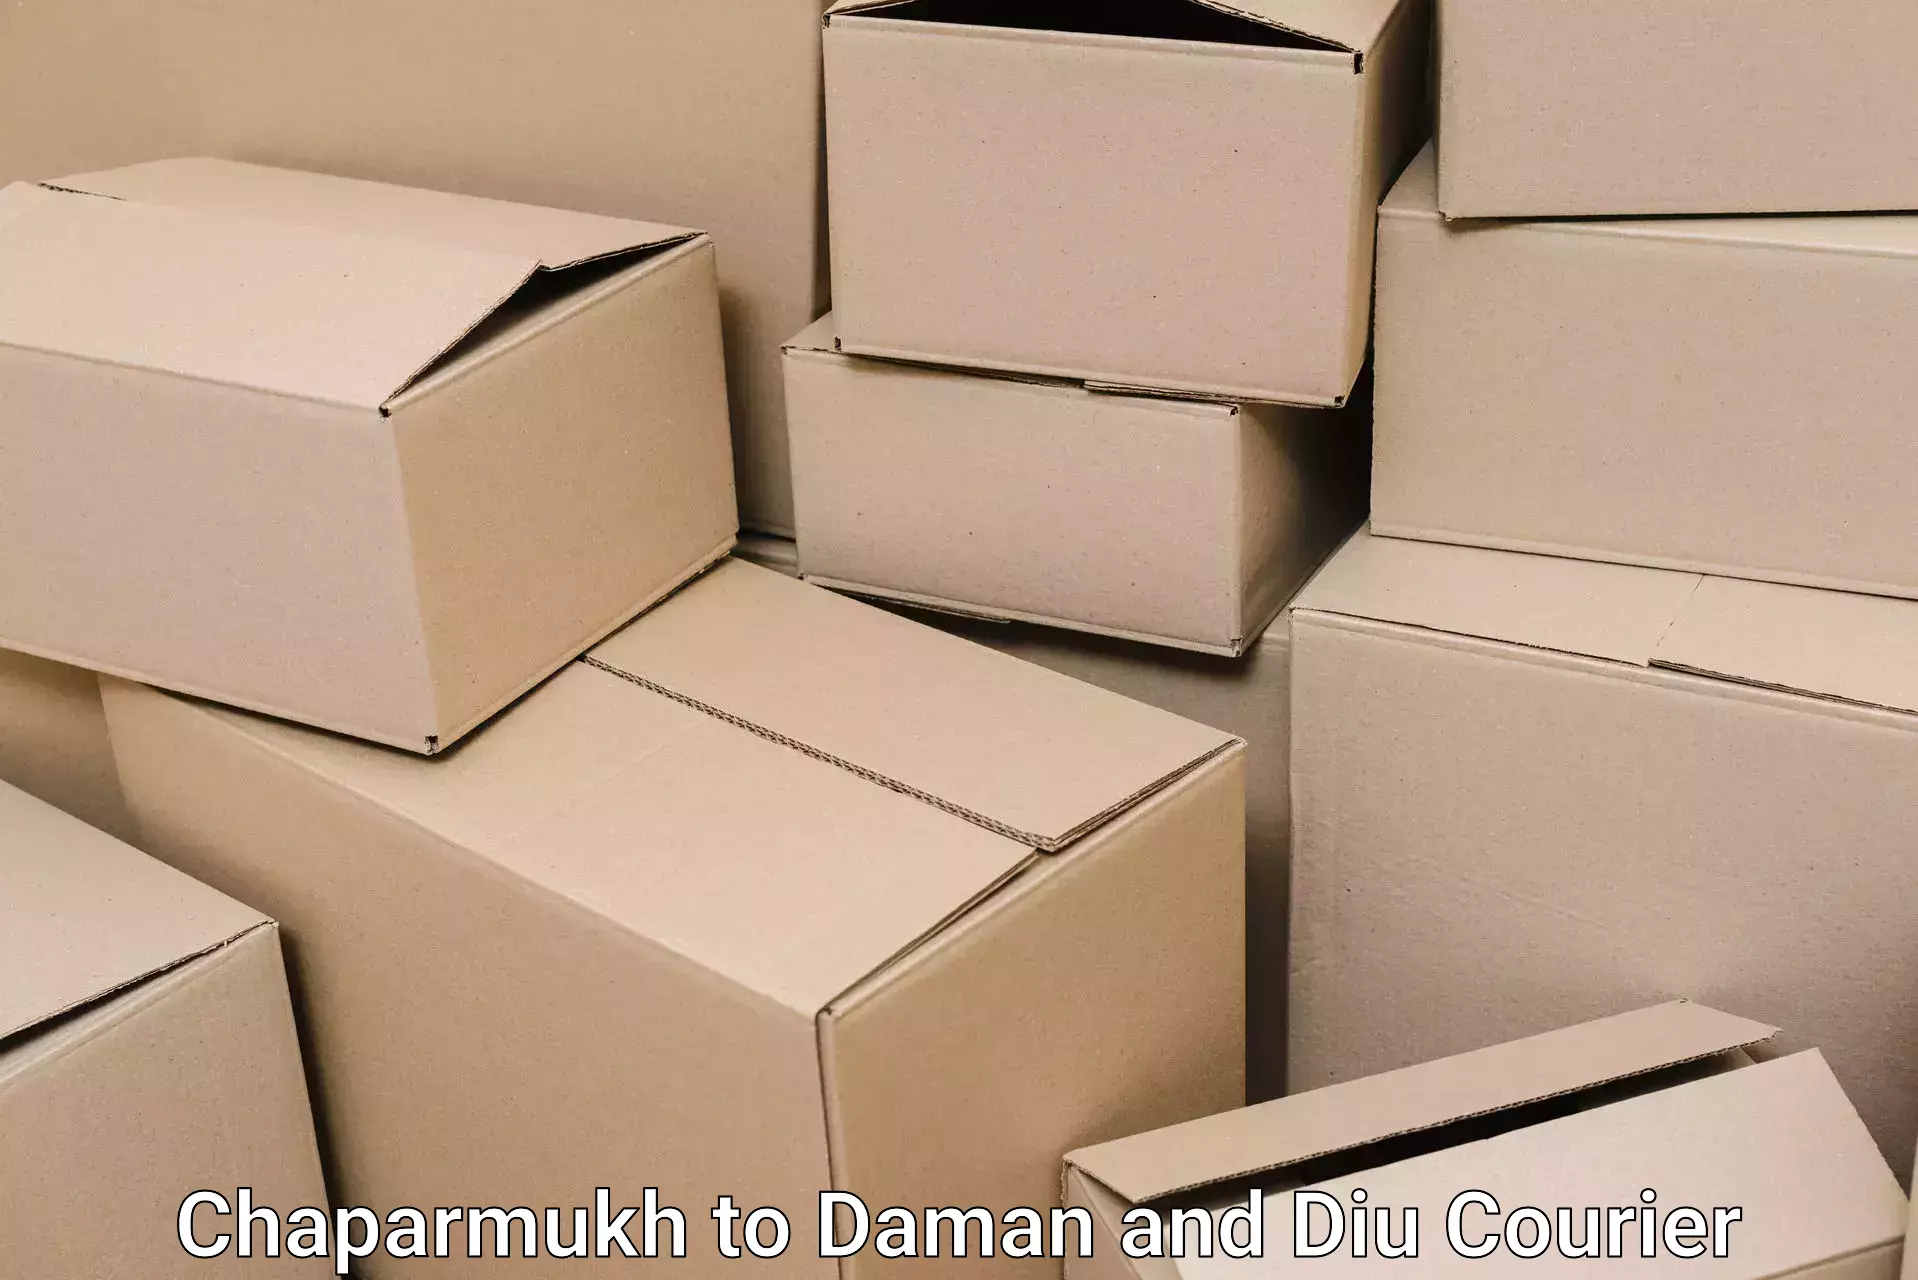 Seamless moving process Chaparmukh to Daman and Diu